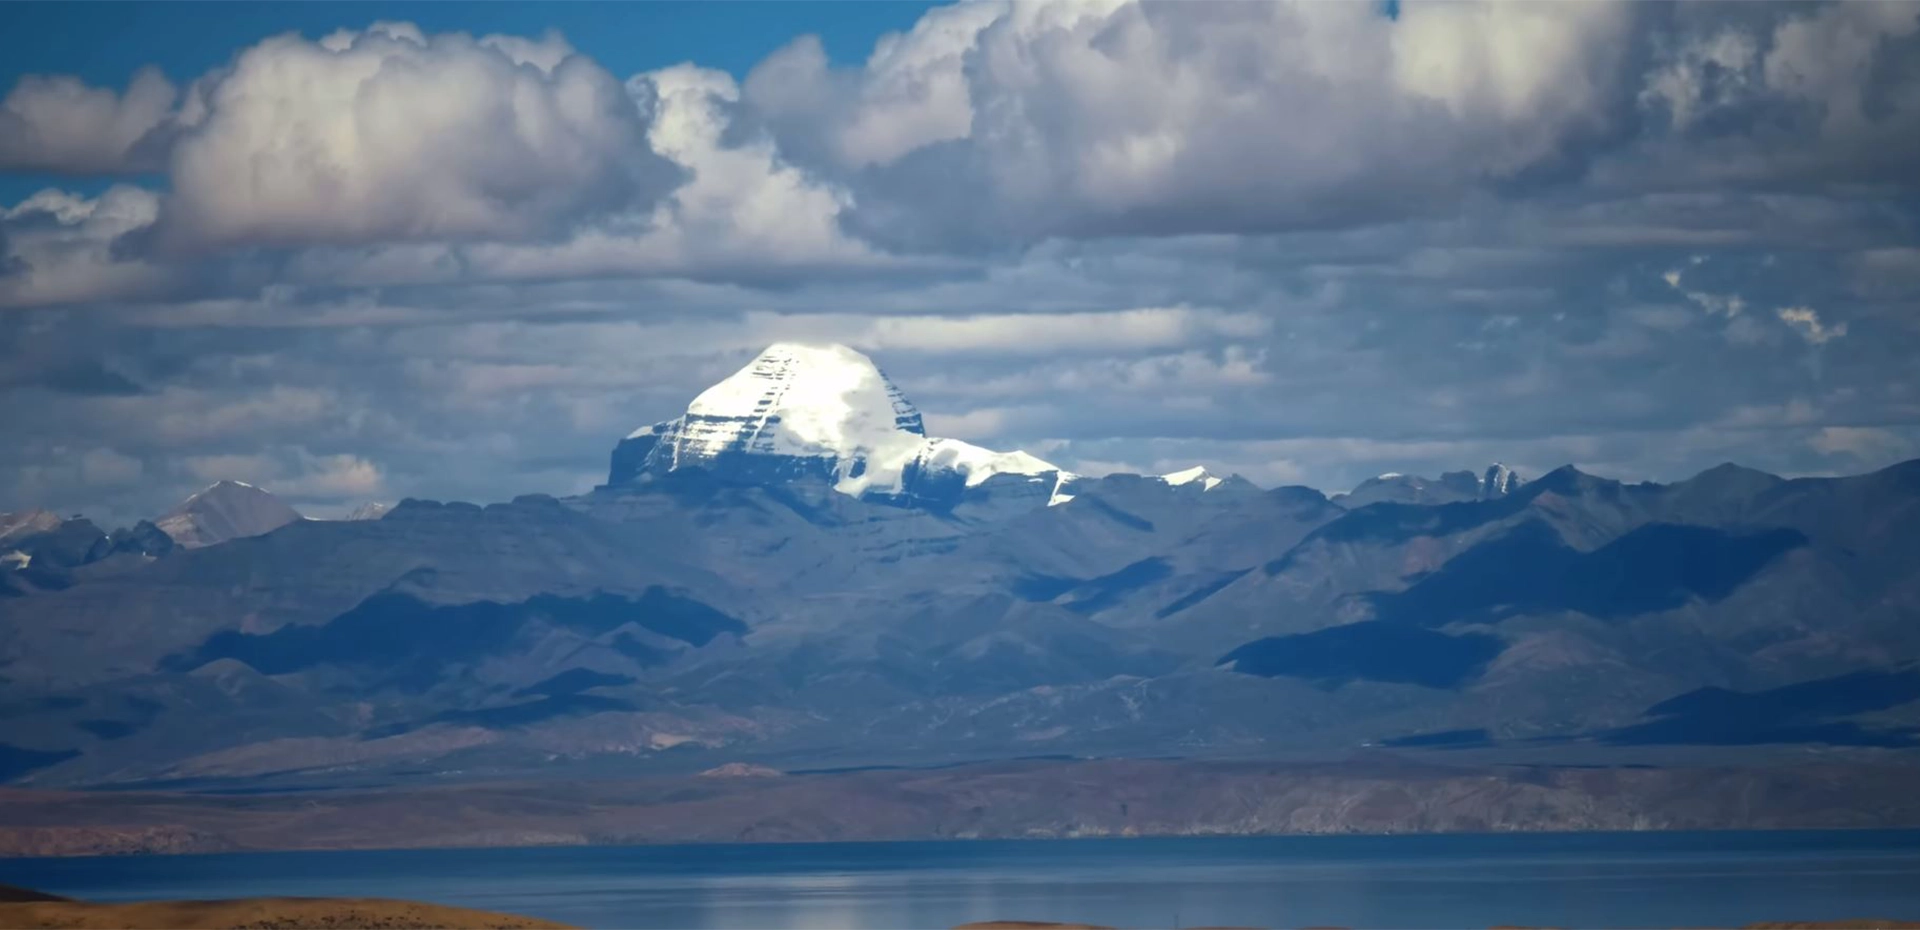 Background Image of Mount Kailash Trek via Limi Valley